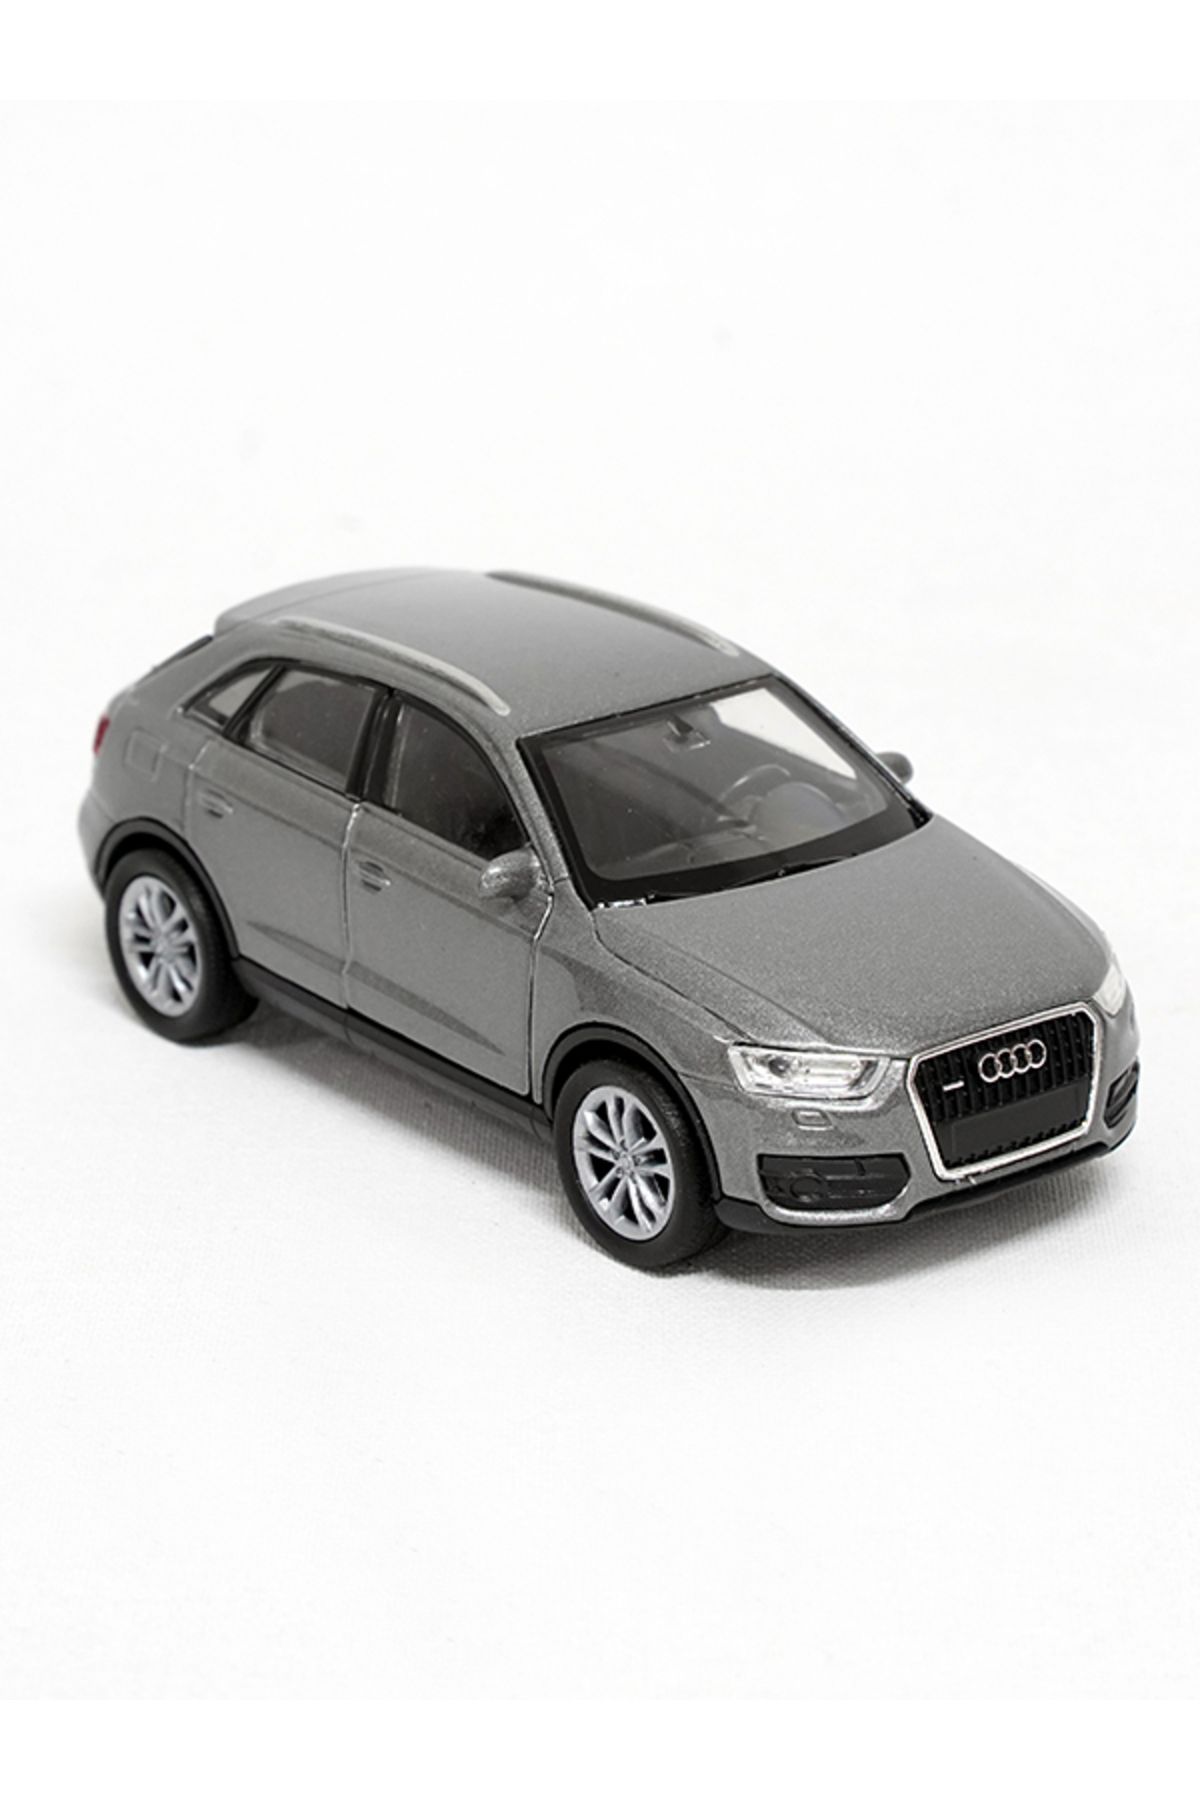 WELLY Lisanslı Audi Q3 Çek Bırak Metal Model Araba (1:32-1:34)